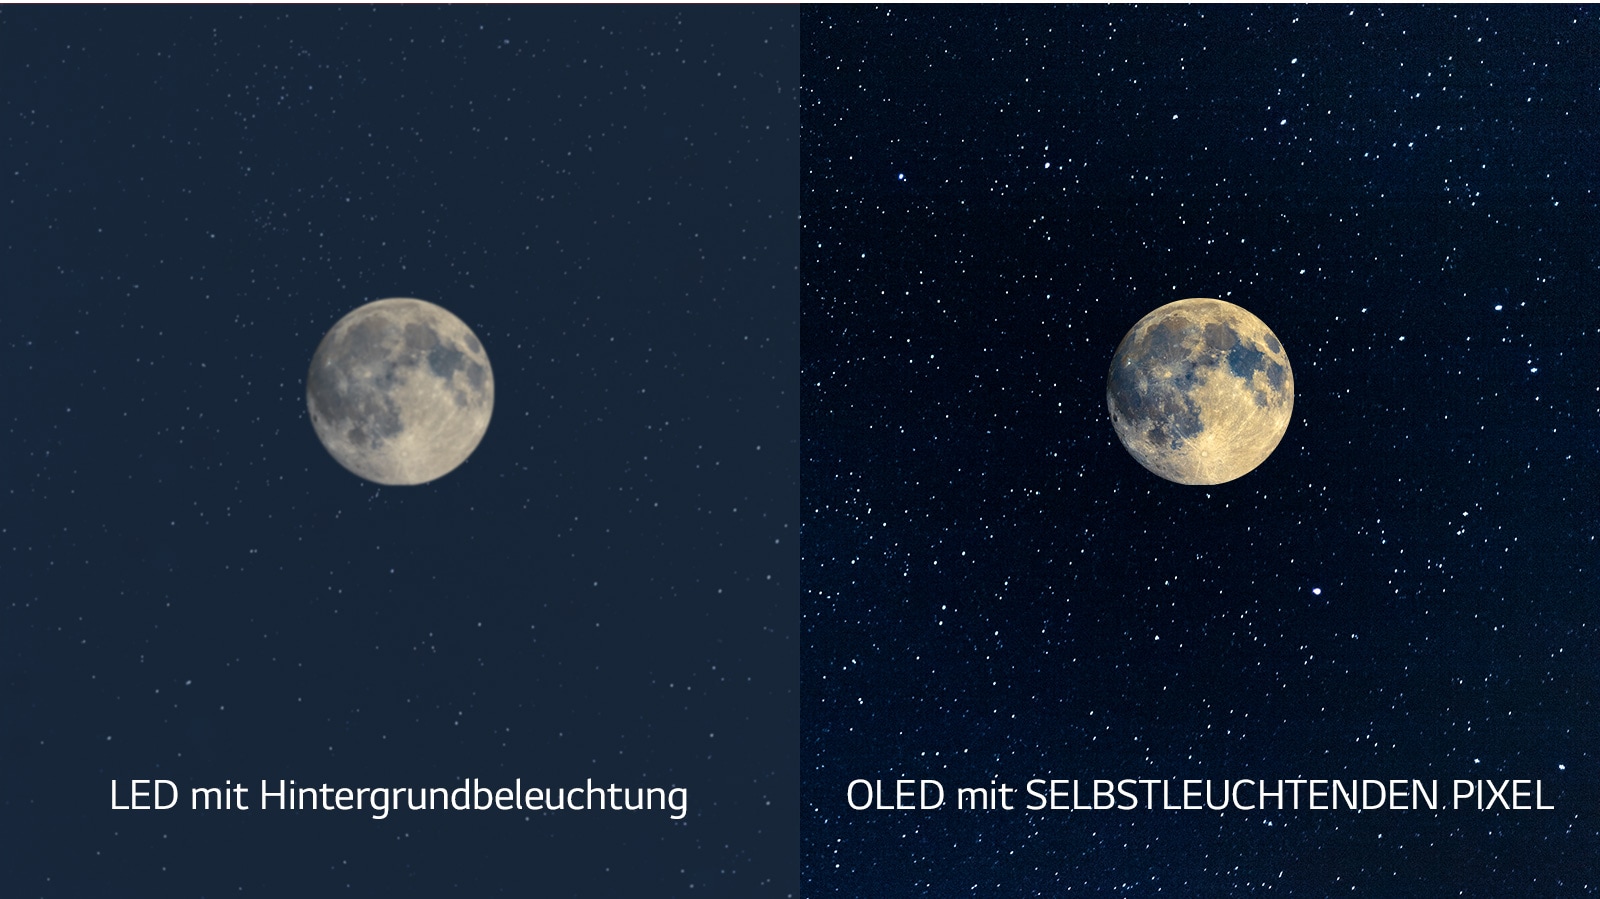 Una rappresentazione della luna, un LED è a sinistra e mostra un nero insufficiente, mentre il nero più profondo può essere visto sull'OLED a destra (guarda il video)